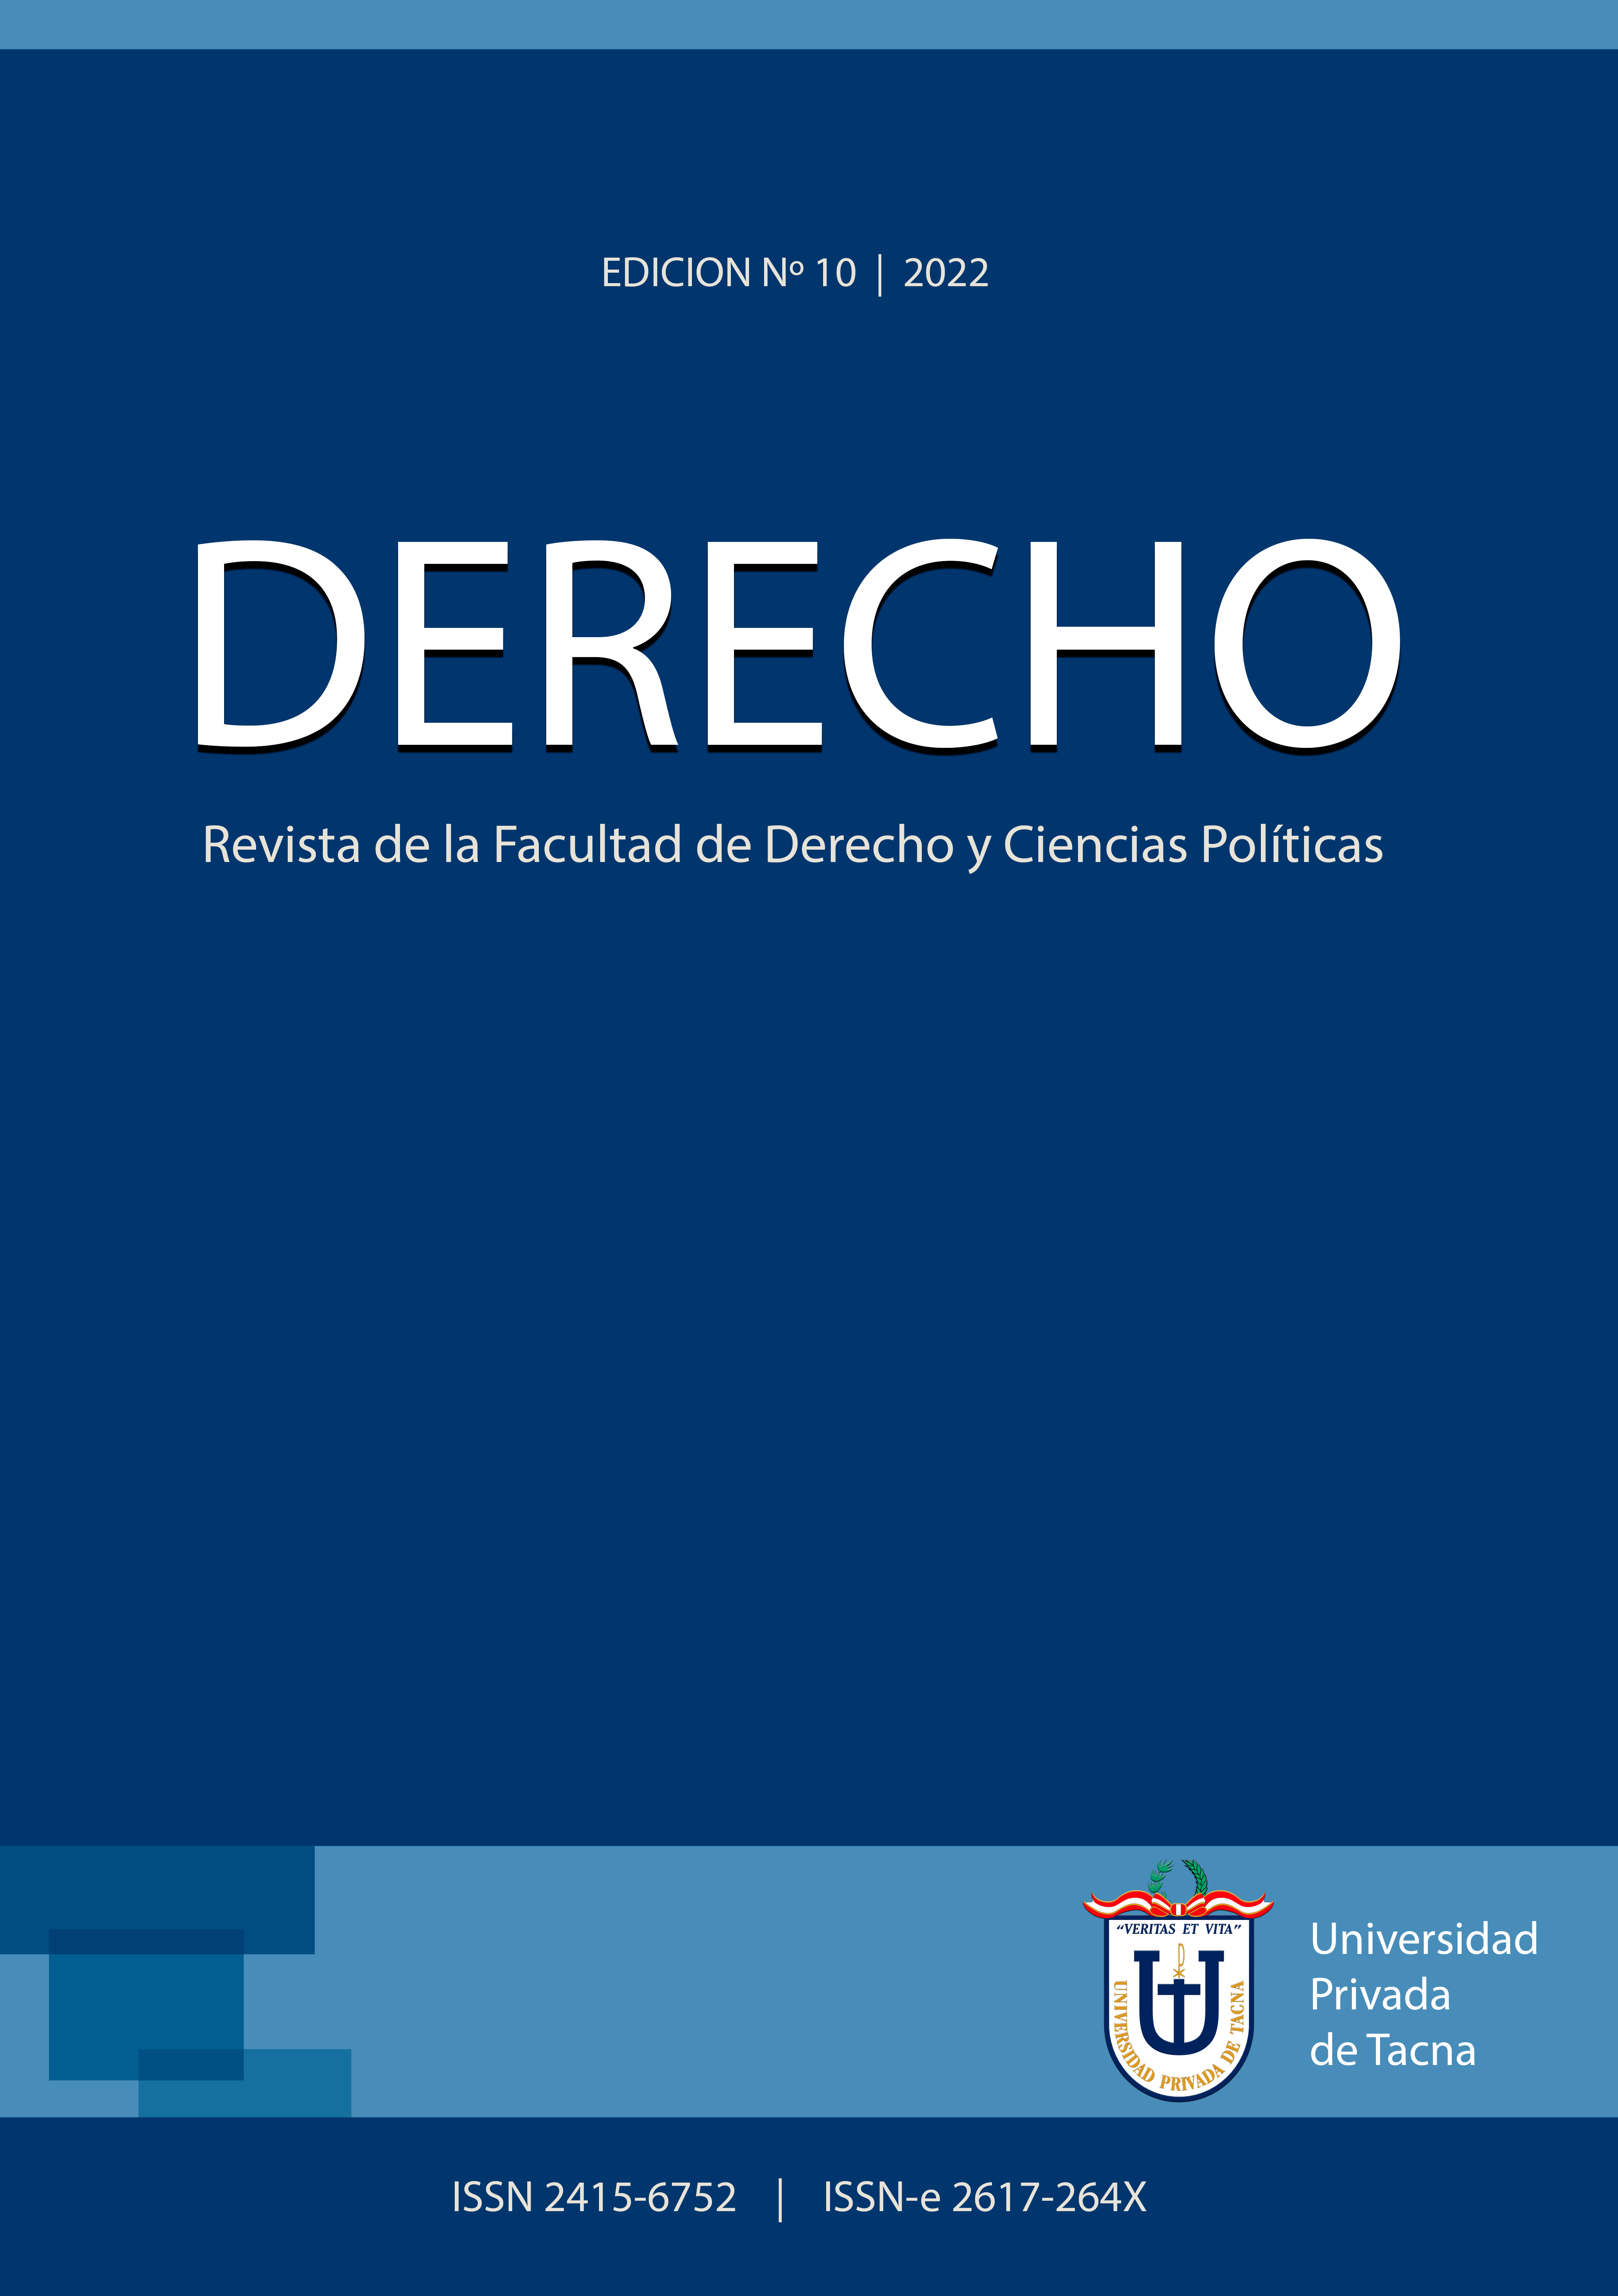 					Ver Vol. 10 Núm. 10 (2022): DERECHO: Revista de la Facultad de Derecho y Ciencias Políticas
				